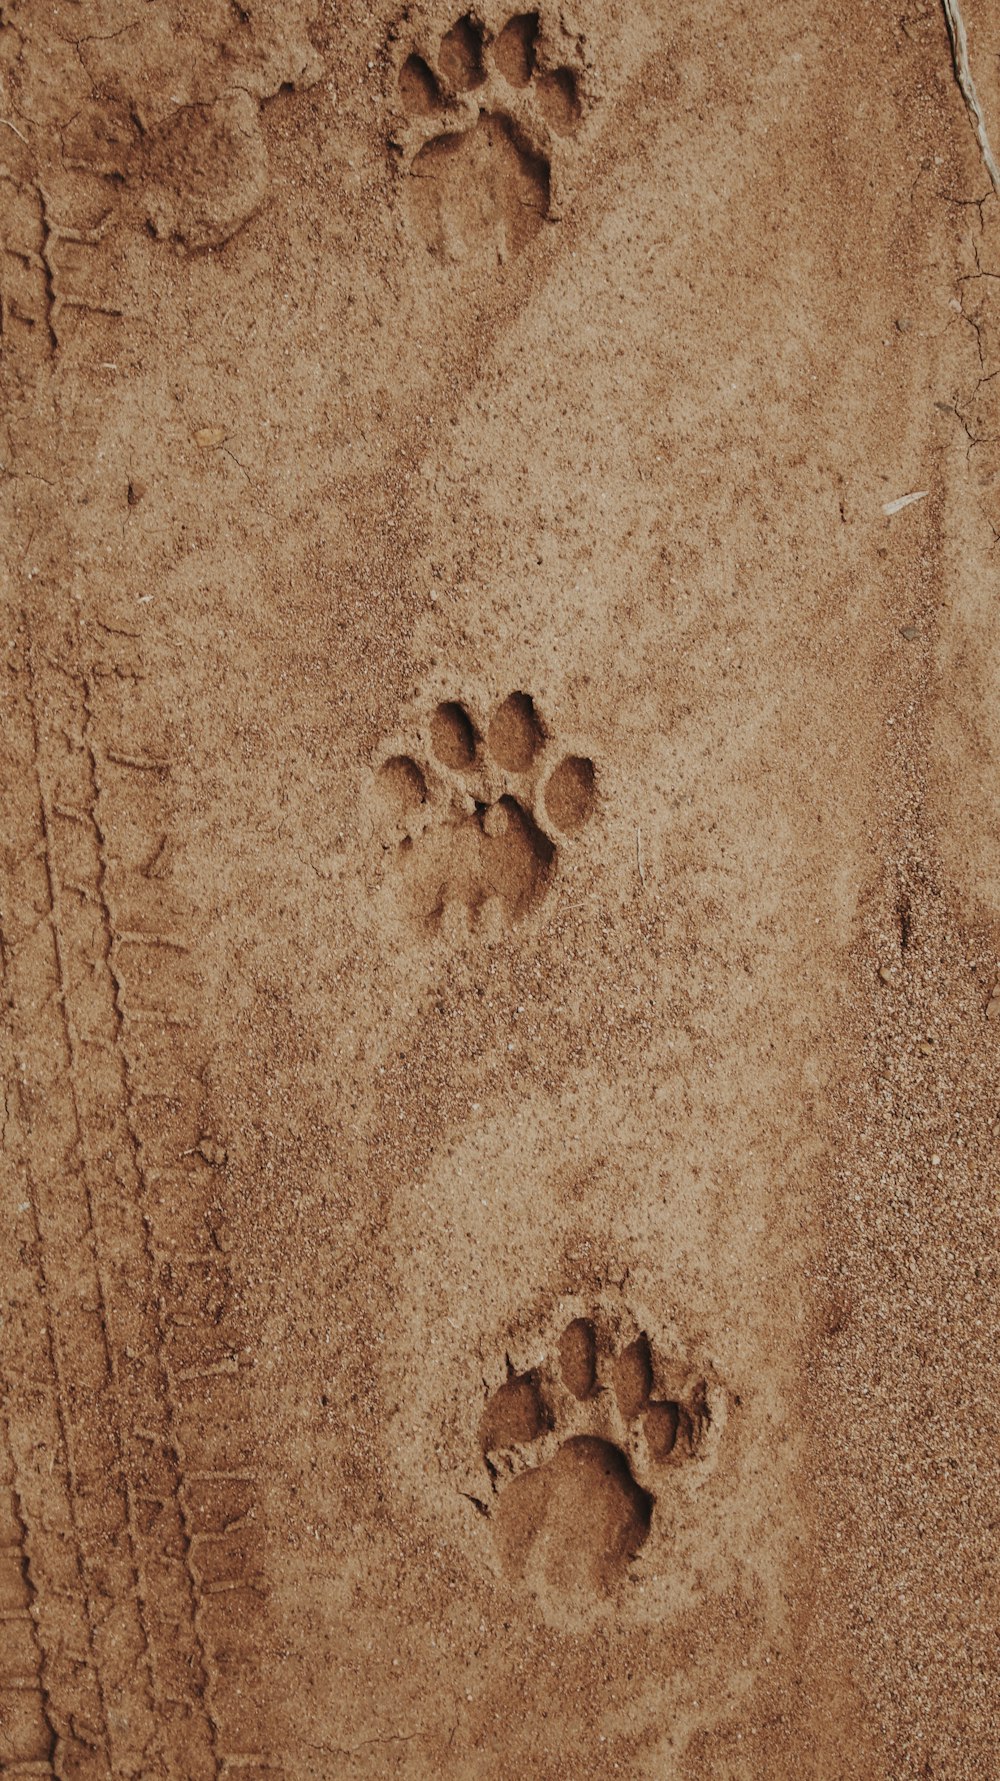 impressão da pata na areia